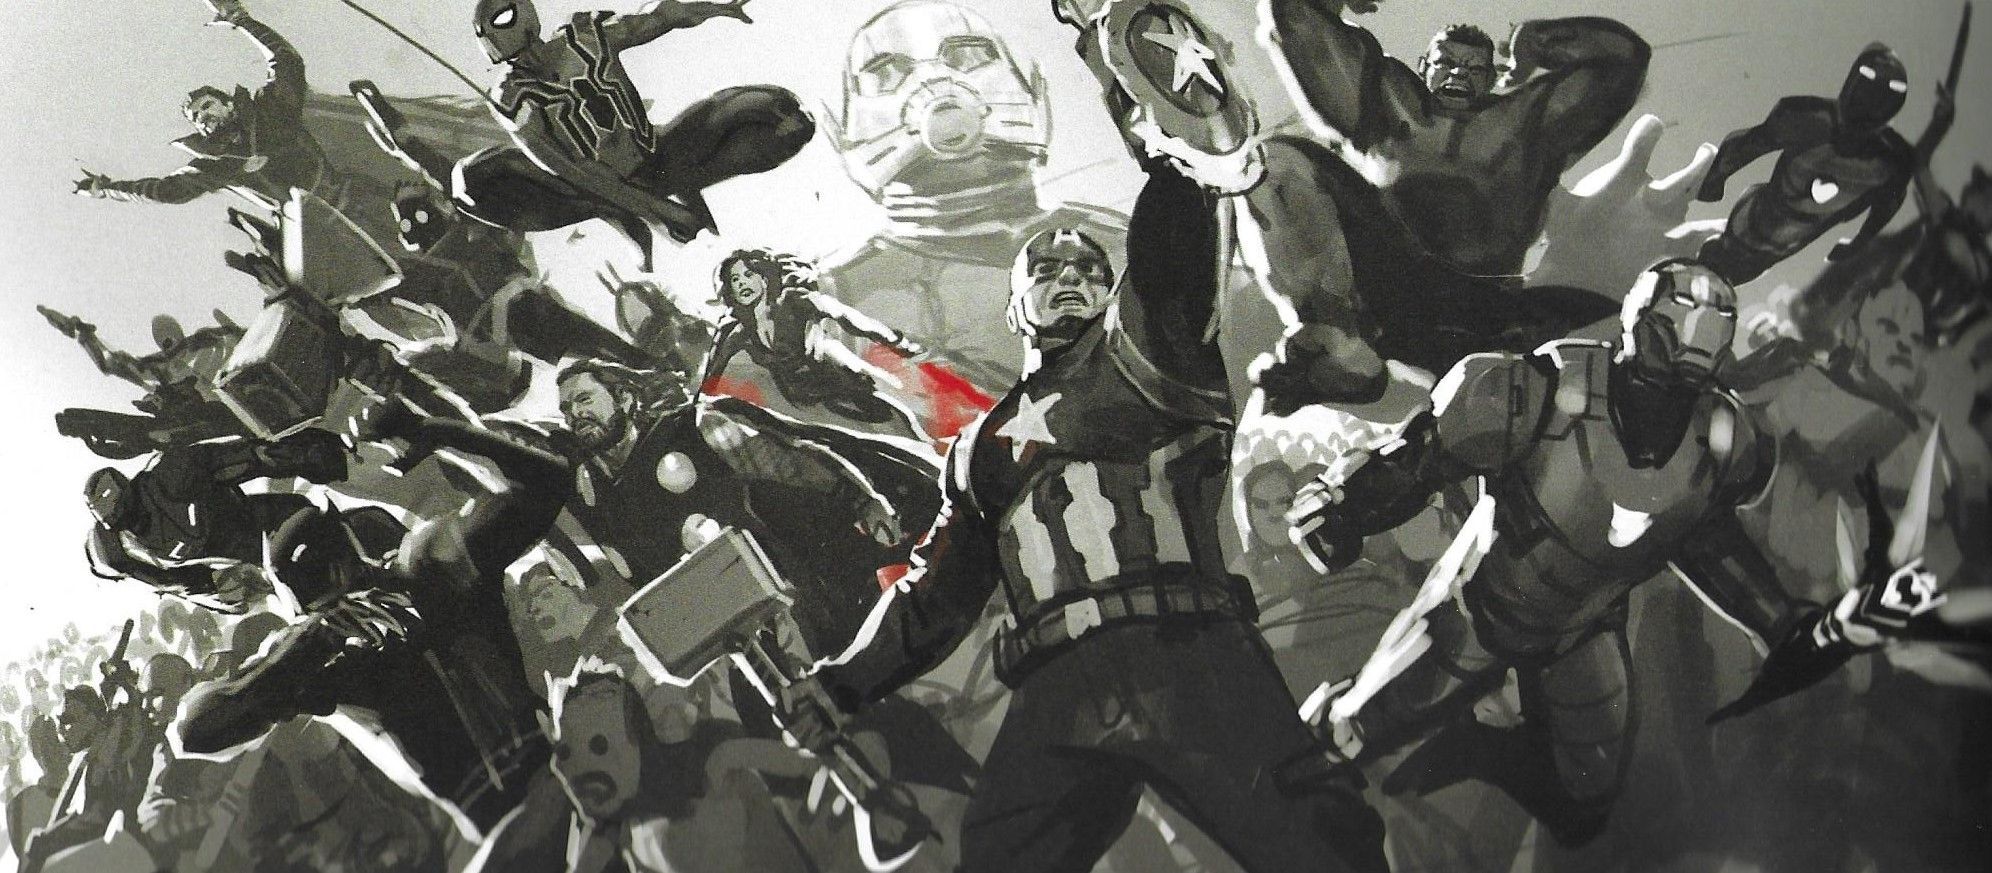 AVENGERS: ENDGAME Final Battle Concept Art Reveals Hulk Vs. Thanos, The Ultimate Fastball Special, And More. Avengers art, Marvel concept art, Concept art